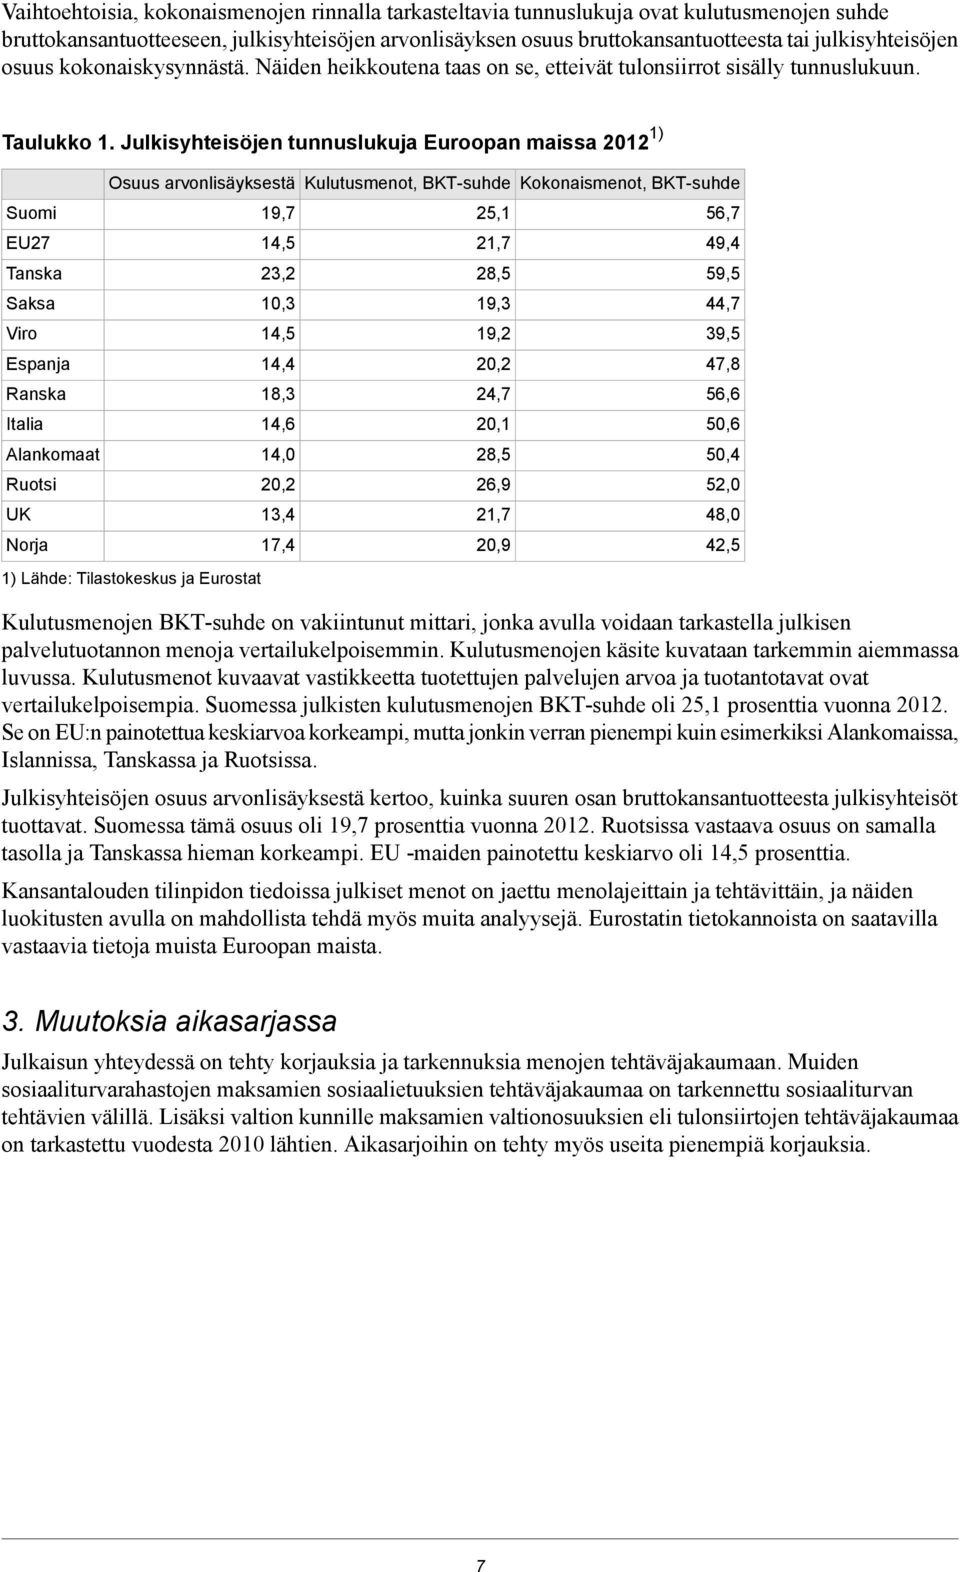 Julkisyhteisöjen tunnuslukuja Euroopan maissa 1) Suomi EU27 Tanska Saksa Viro Espanja Ranska Italia Alankomaat Ruotsi UK Norja Osuus arvonlisäyksestä 1) Lähde: Tilastokeskus ja Eurostat 19,7 14,5